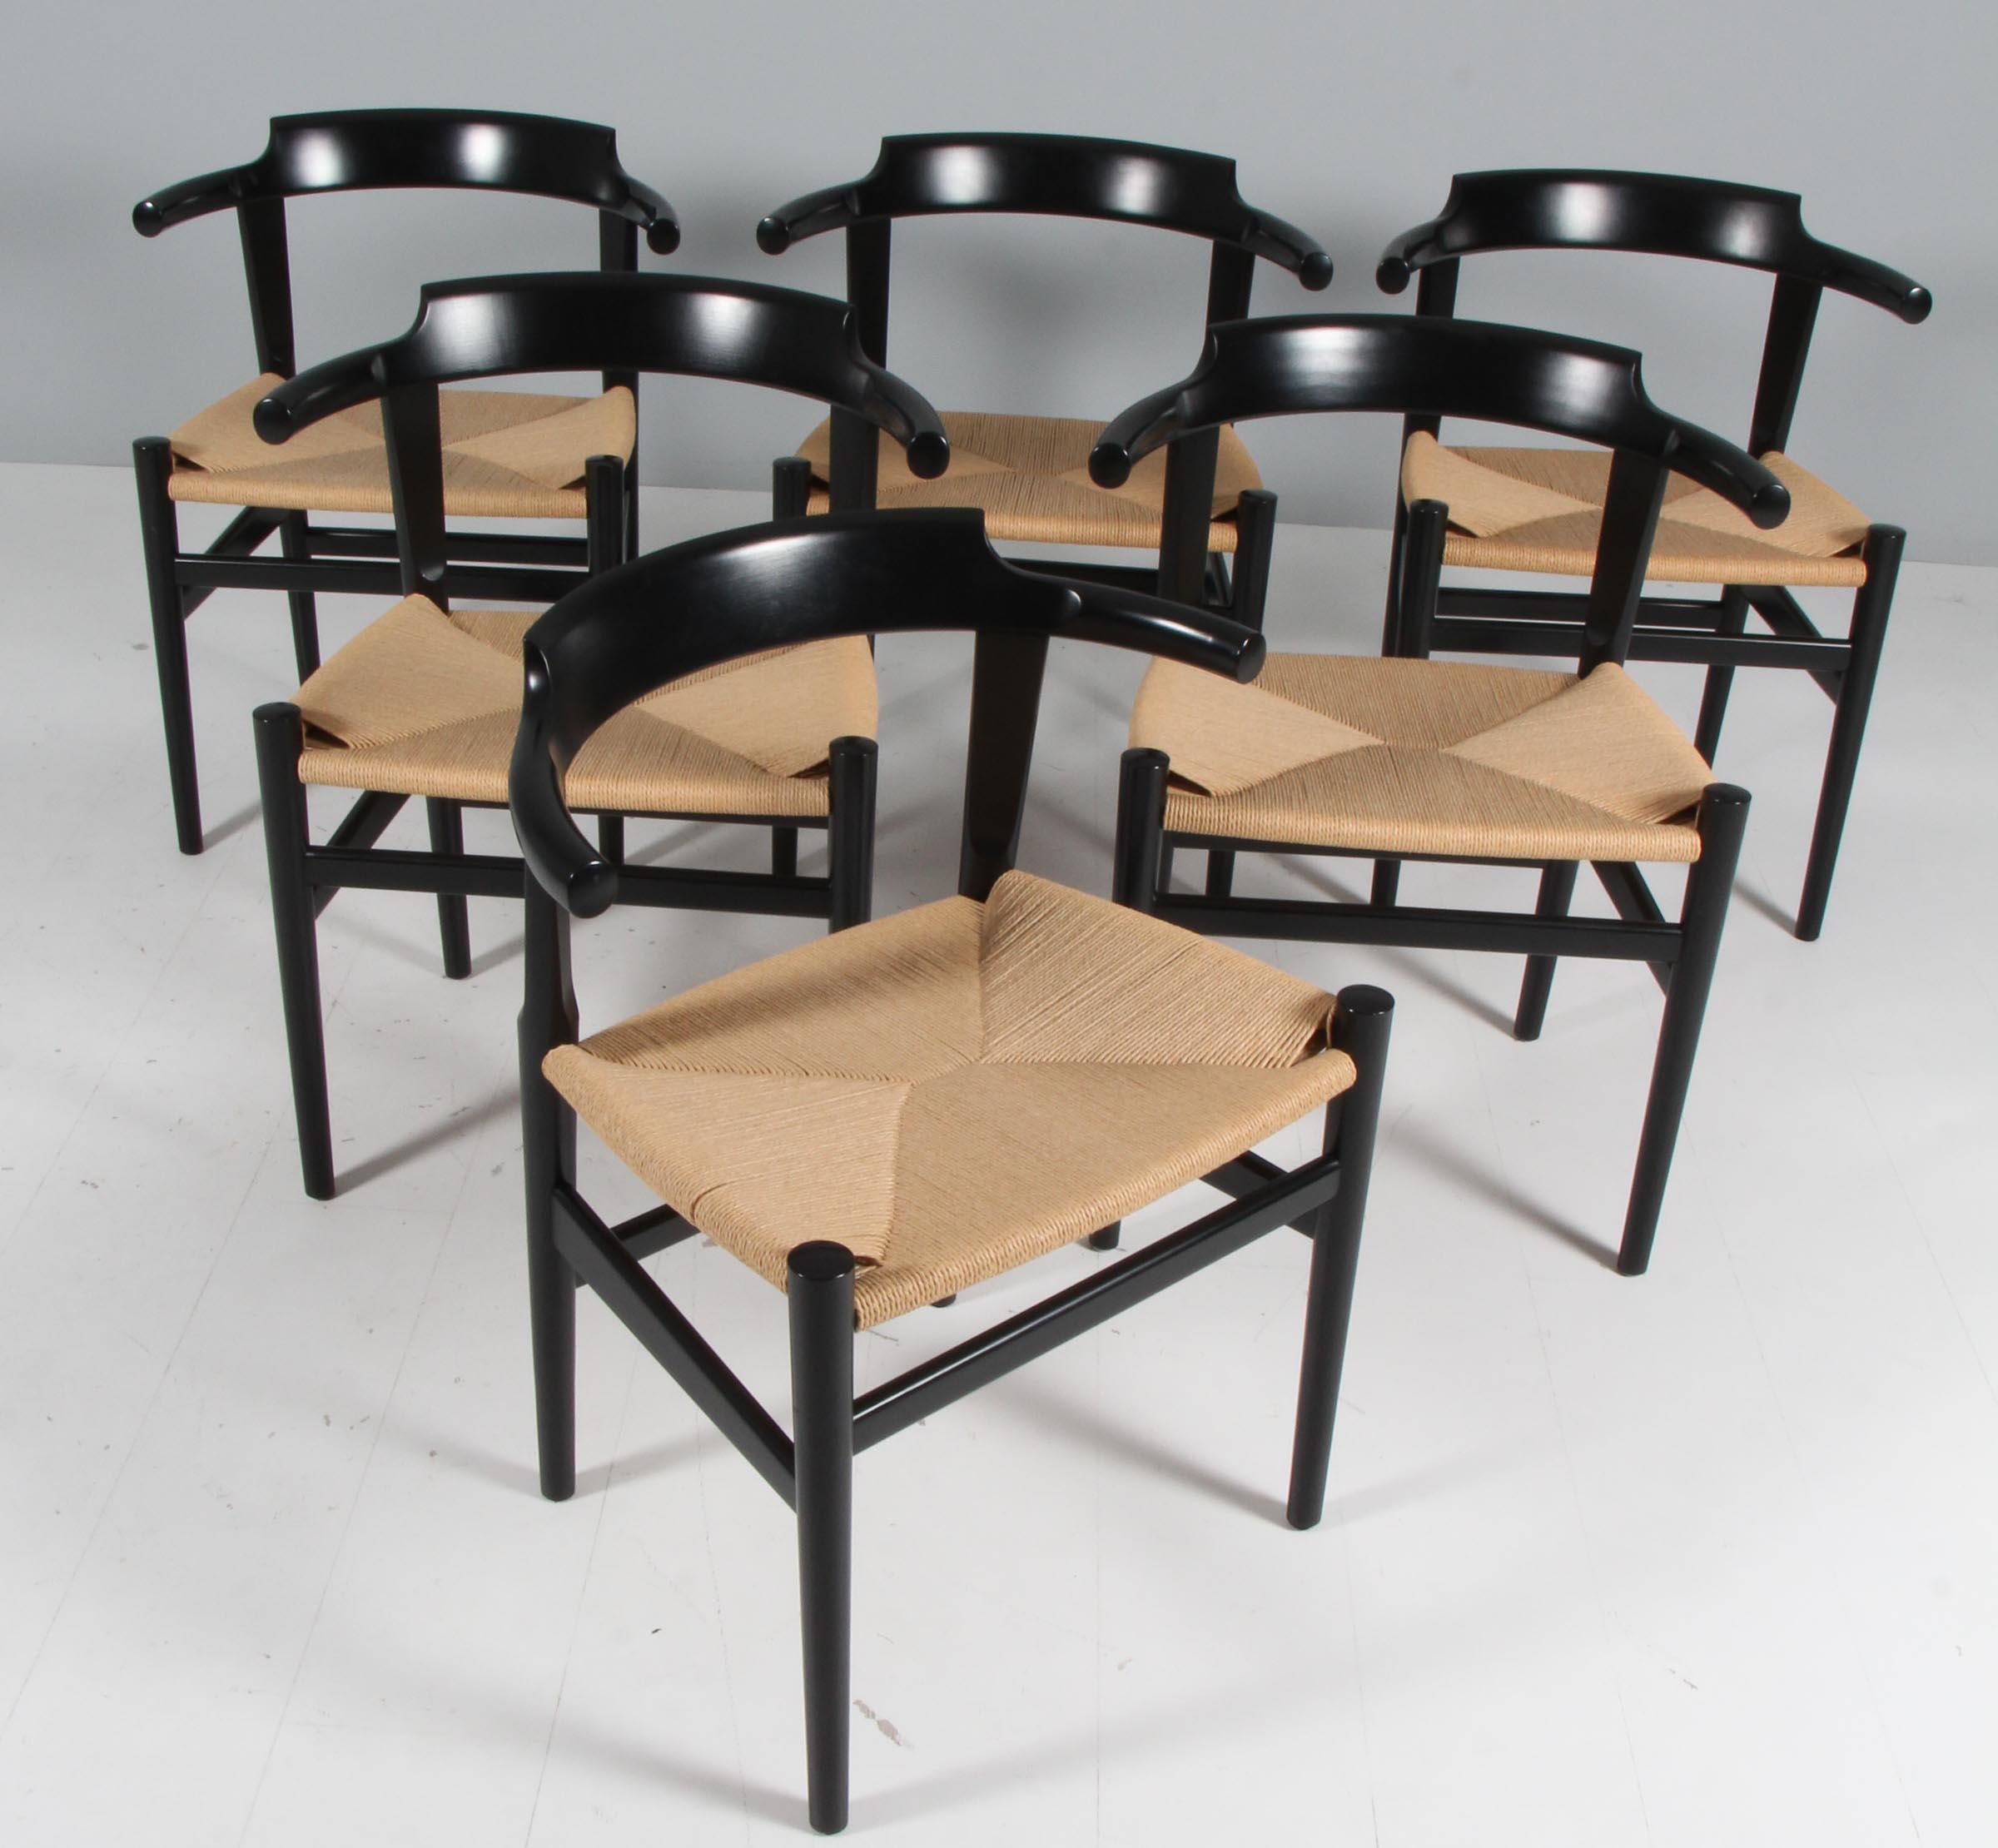 Hans J. Wegner six fauteuils avec cadre laqué solide

Sièges à cordon en papier danois d'origine.

Modèle PP68, fabriqué par PP Møbler.